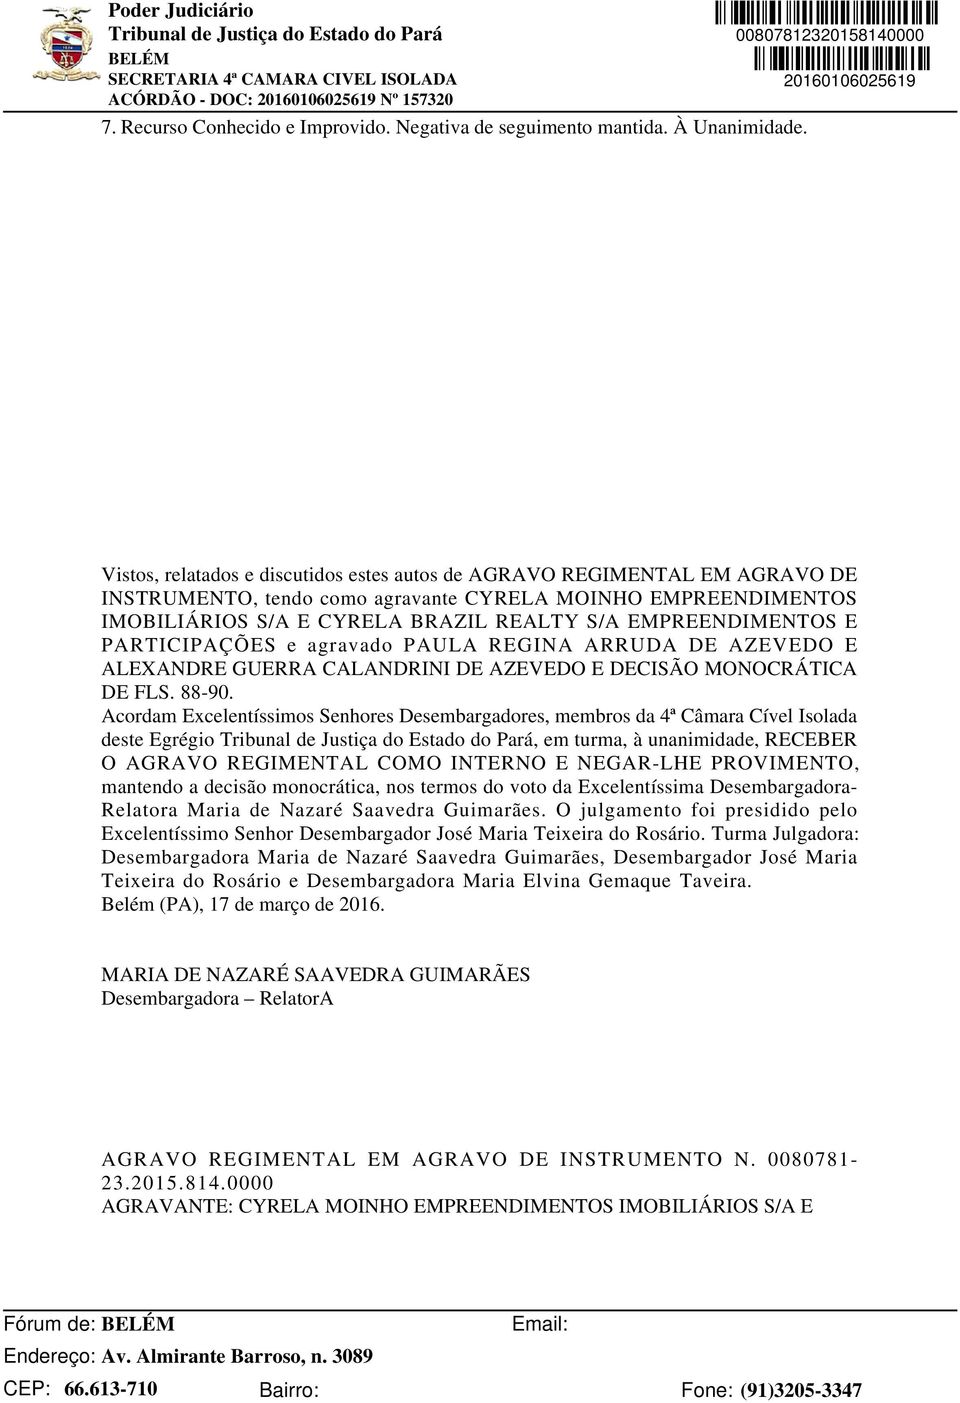 EMPREENDIMENTOS E PARTICIPAÇÕES e agravado PAULA REGINA ARRUDA DE AZEVEDO E ALEXANDRE GUERRA CALANDRINI DE AZEVEDO E DECISÃO MONOCRÁTICA DE FLS. 88-90.